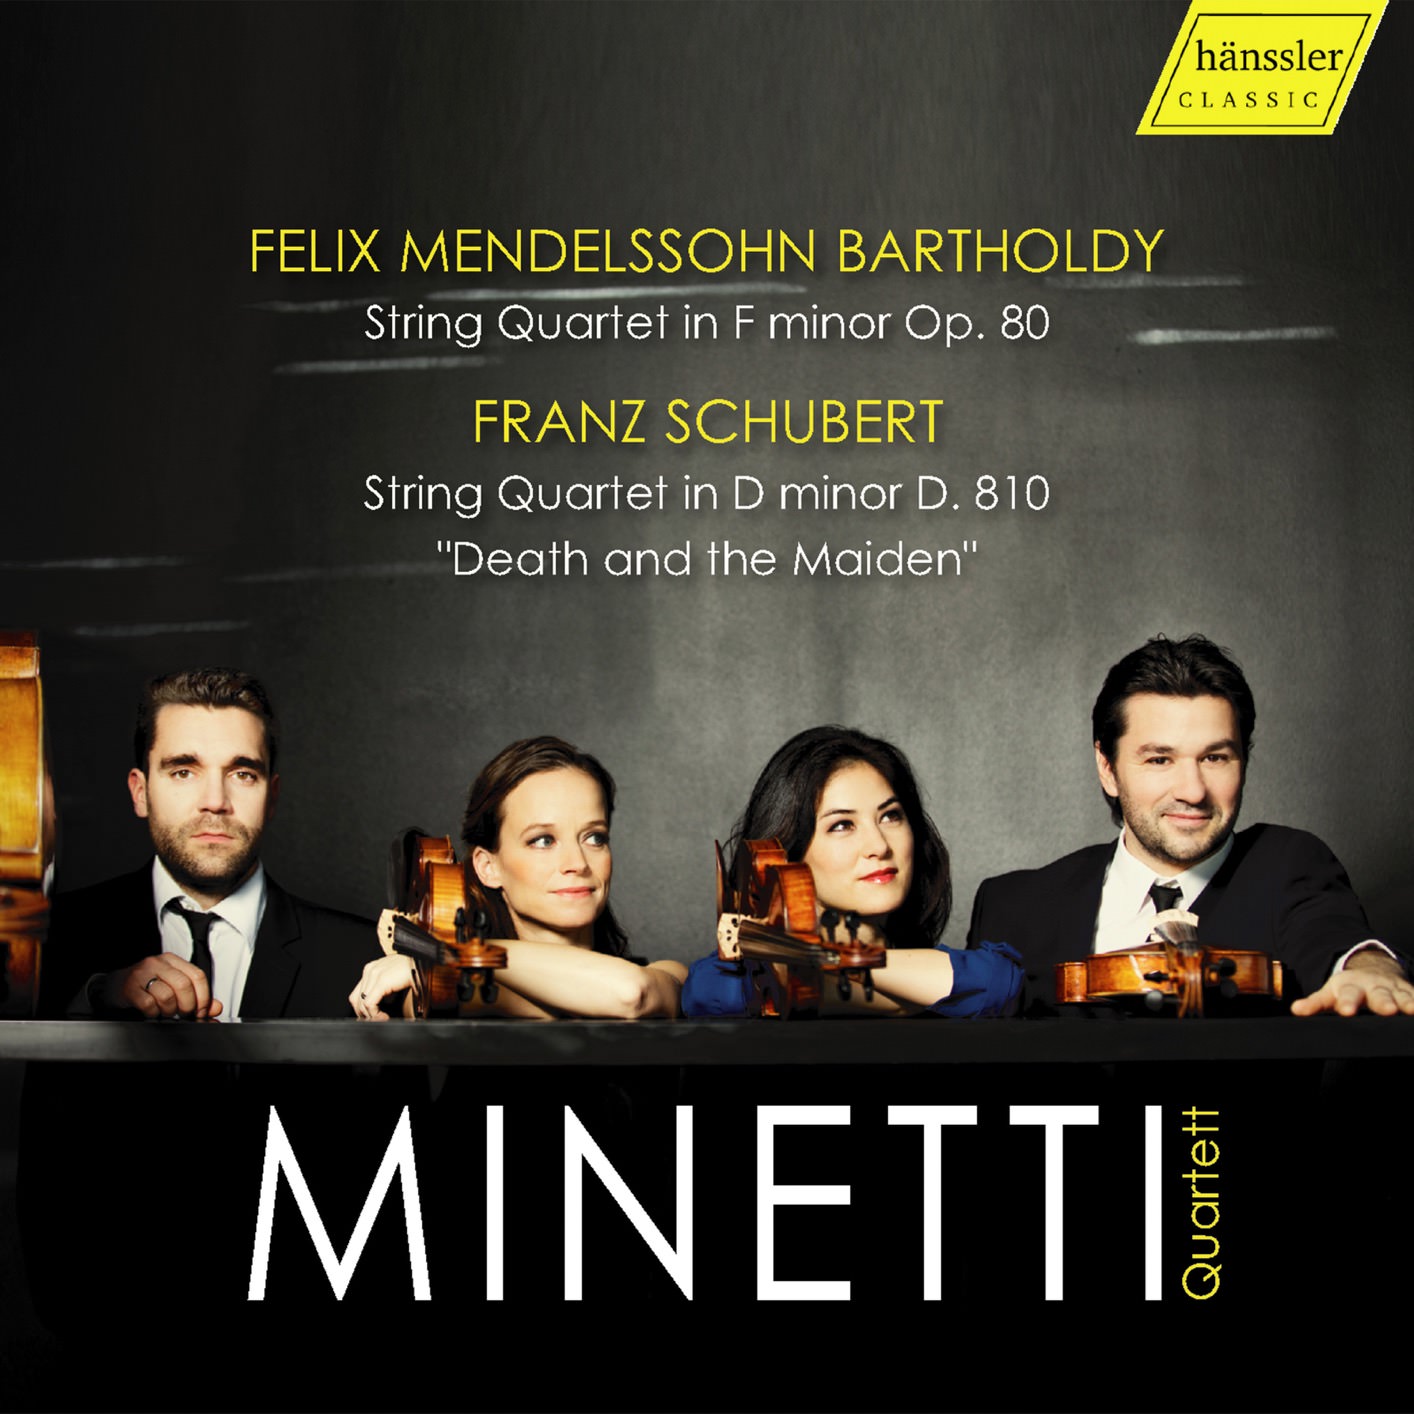 Minetti Quartet - Mendelssohn & Schubert: String Quartets (2018) [FLAC 24bit/48kHz]